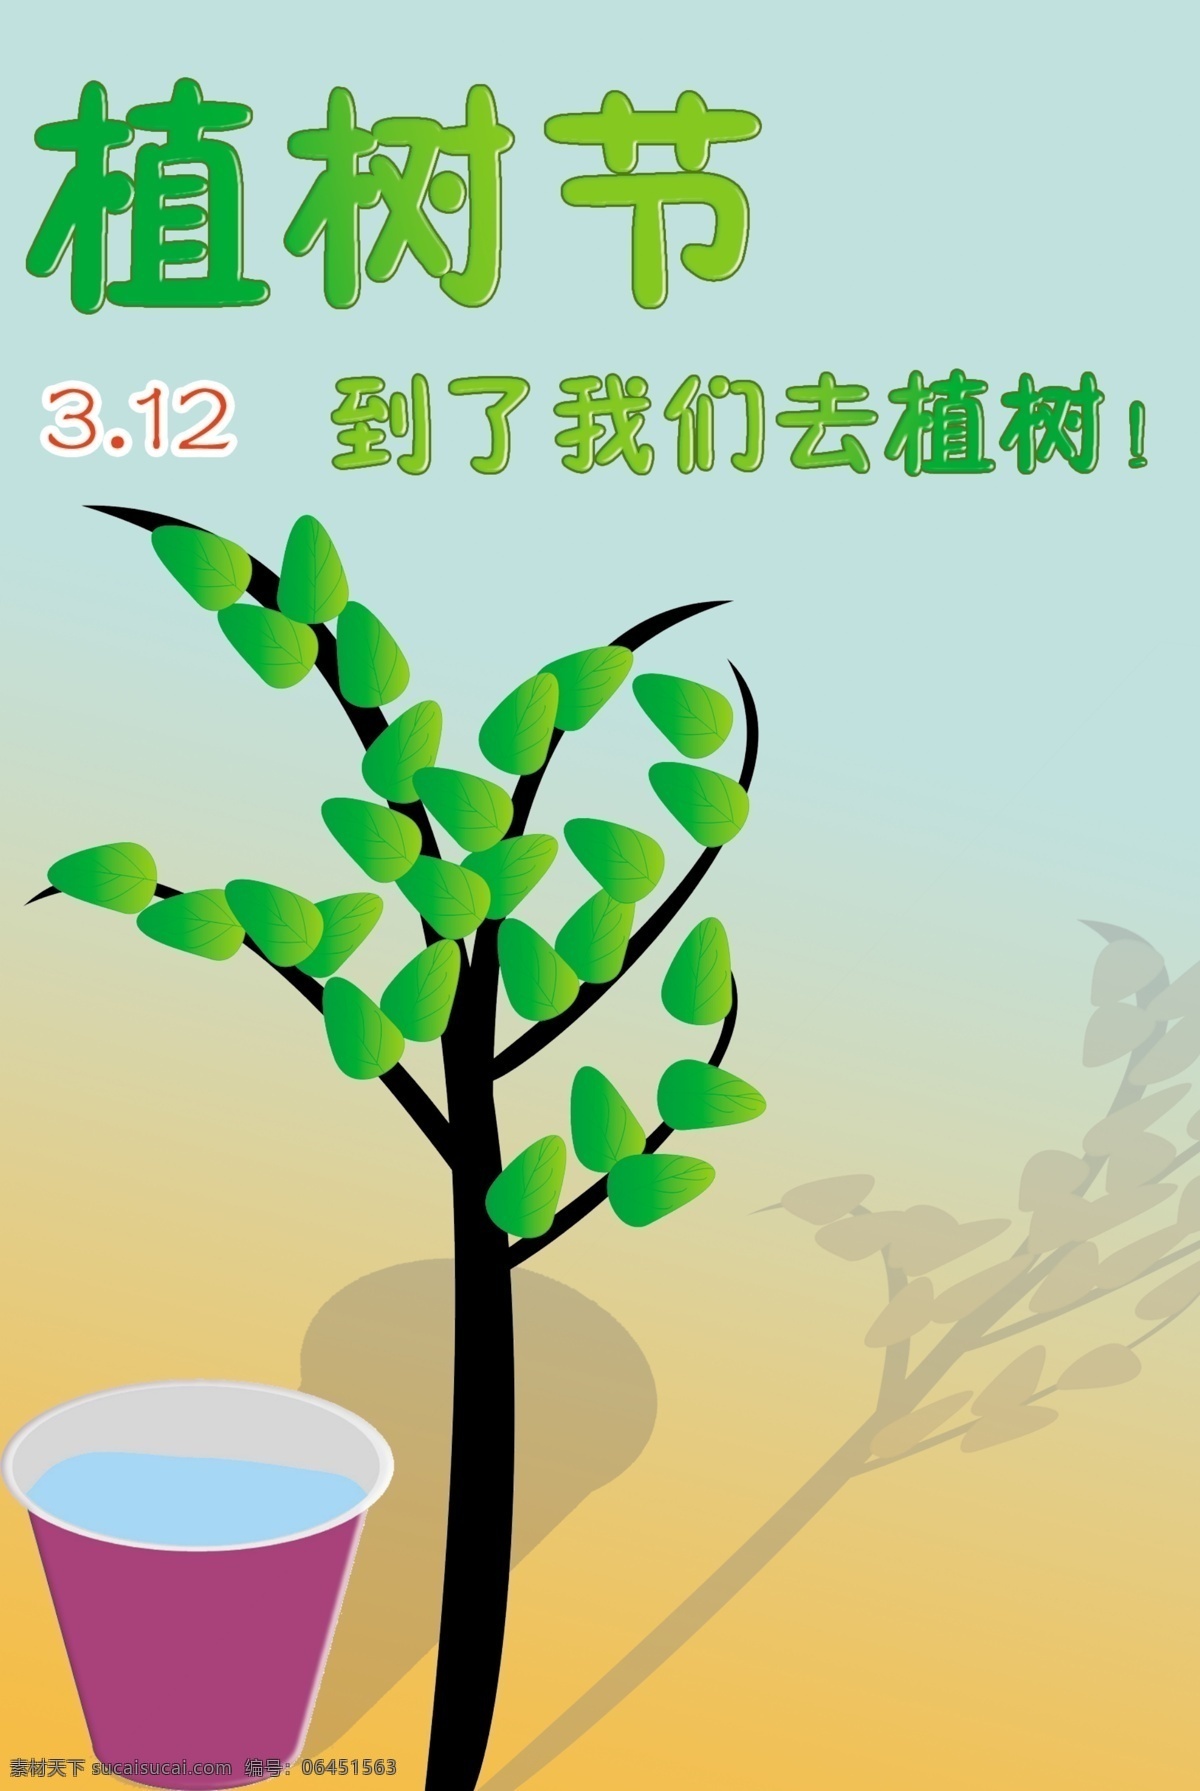 植树节 广告设计模板 树木 水桶 源文件 模板下载 其他海报设计